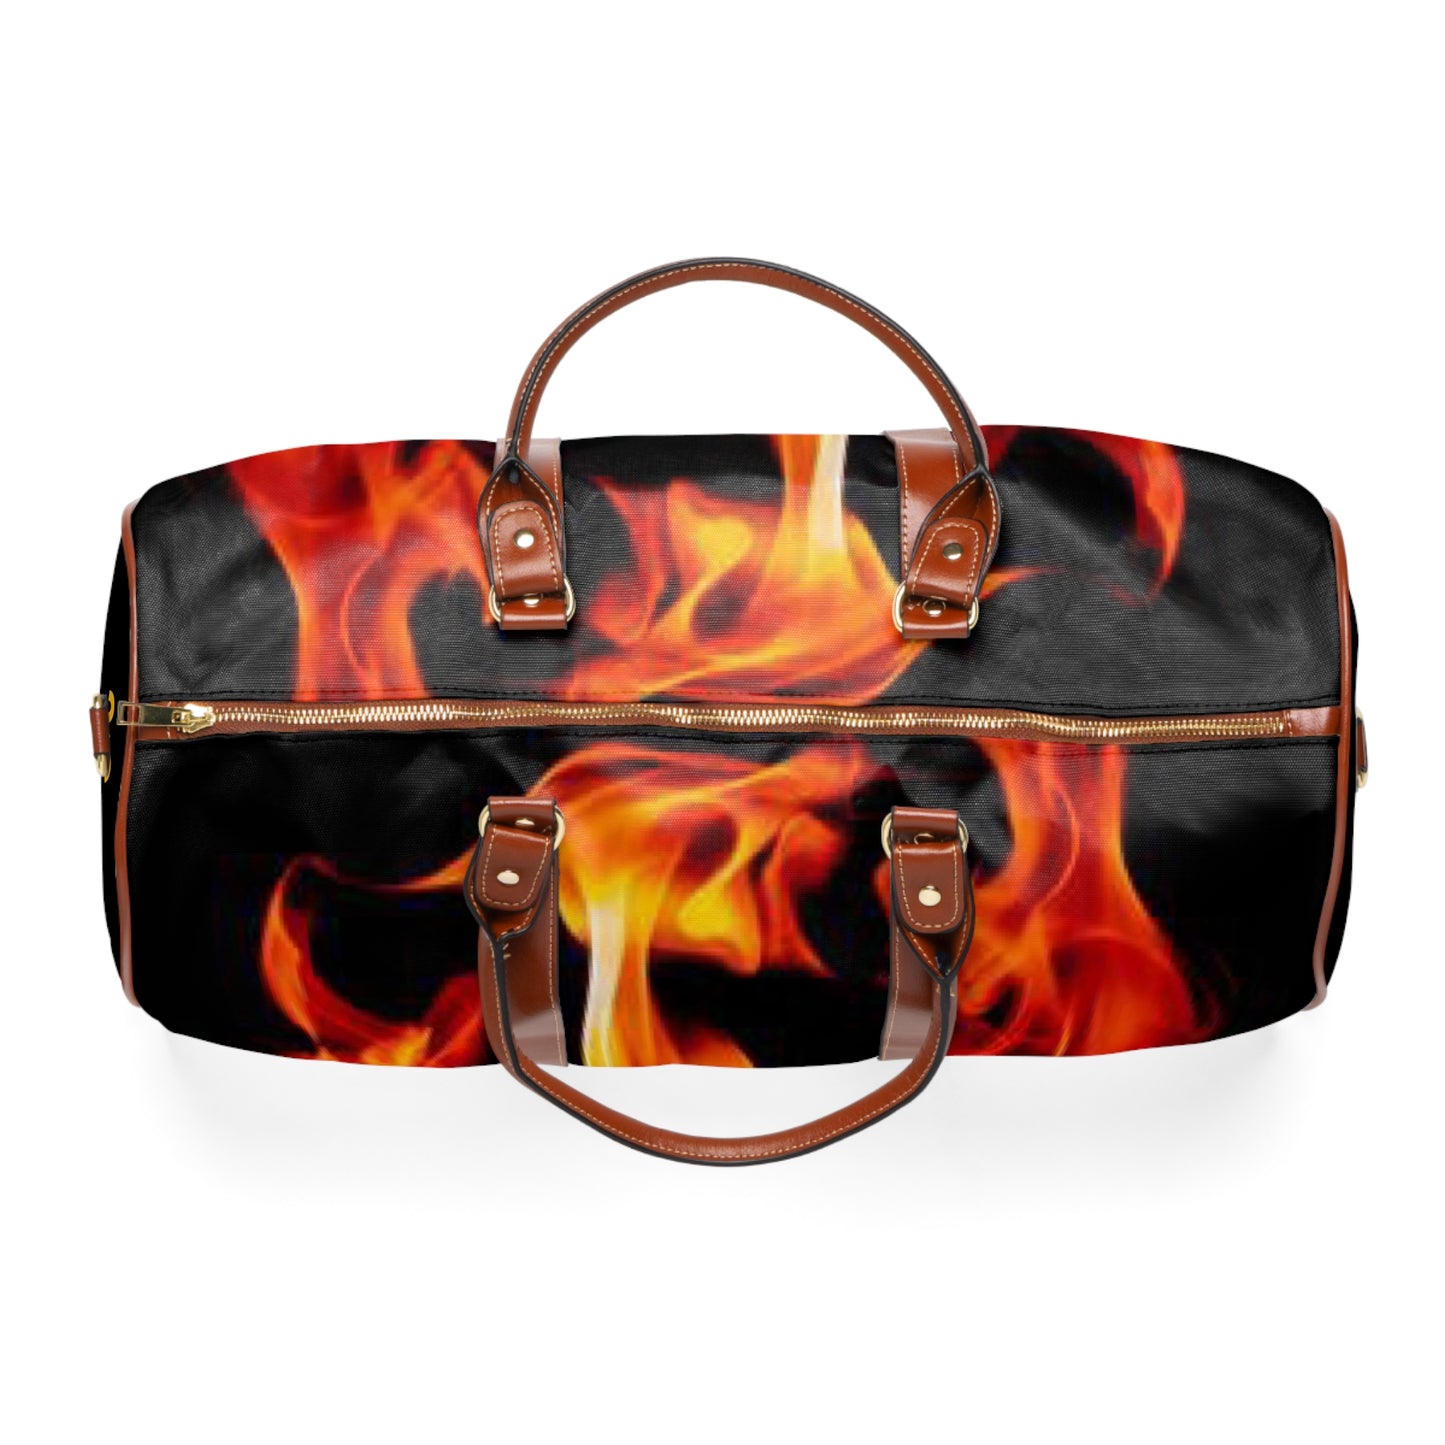 Flames 82 Waterproof Travel Bag